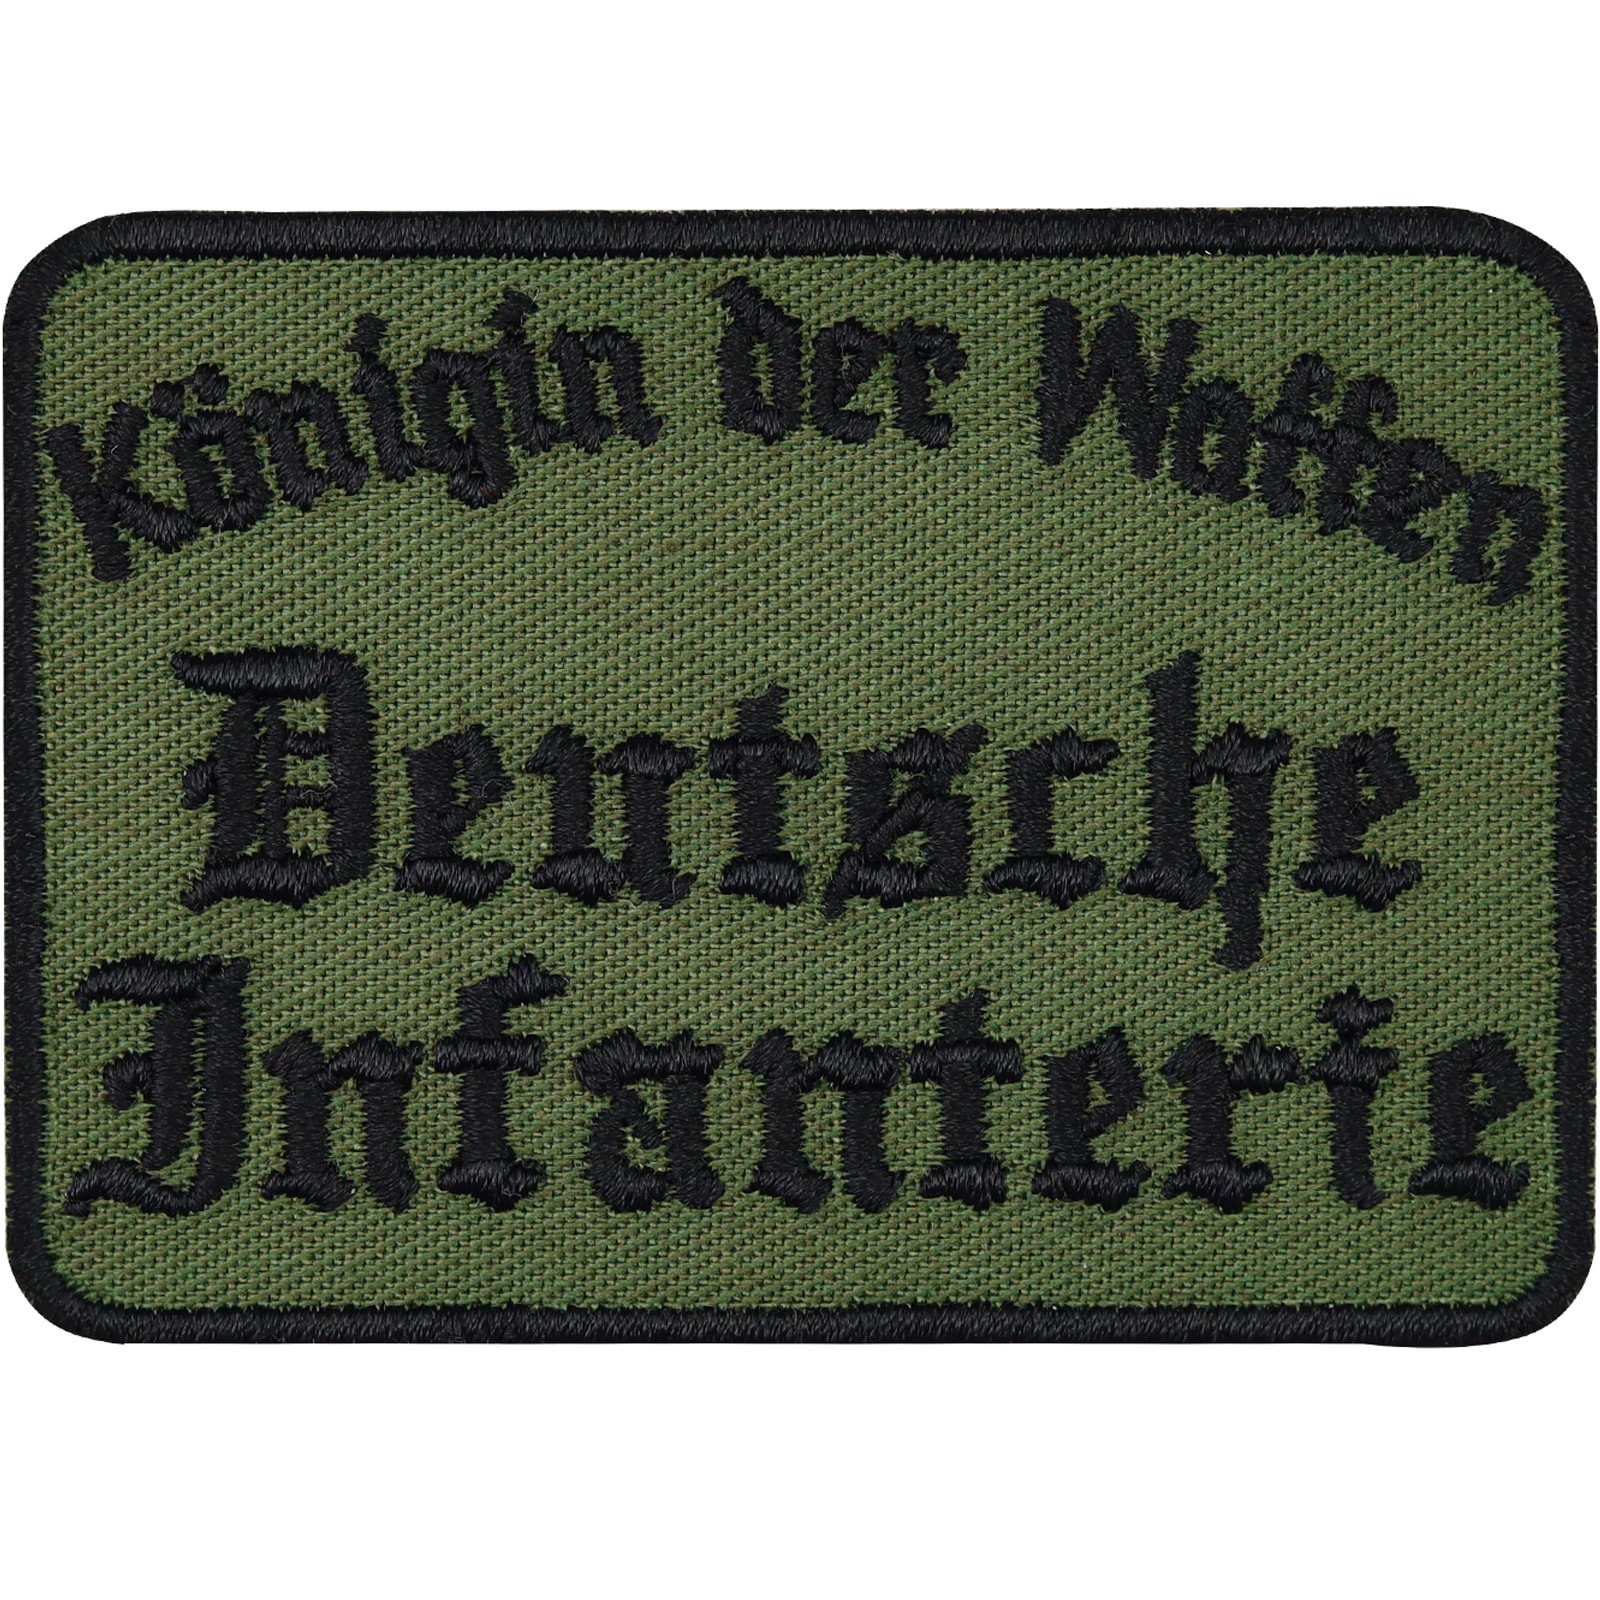 Patch BW Blutgruppe selbst gestalten Aufnäher Flecktarn Bundeswehr #31640